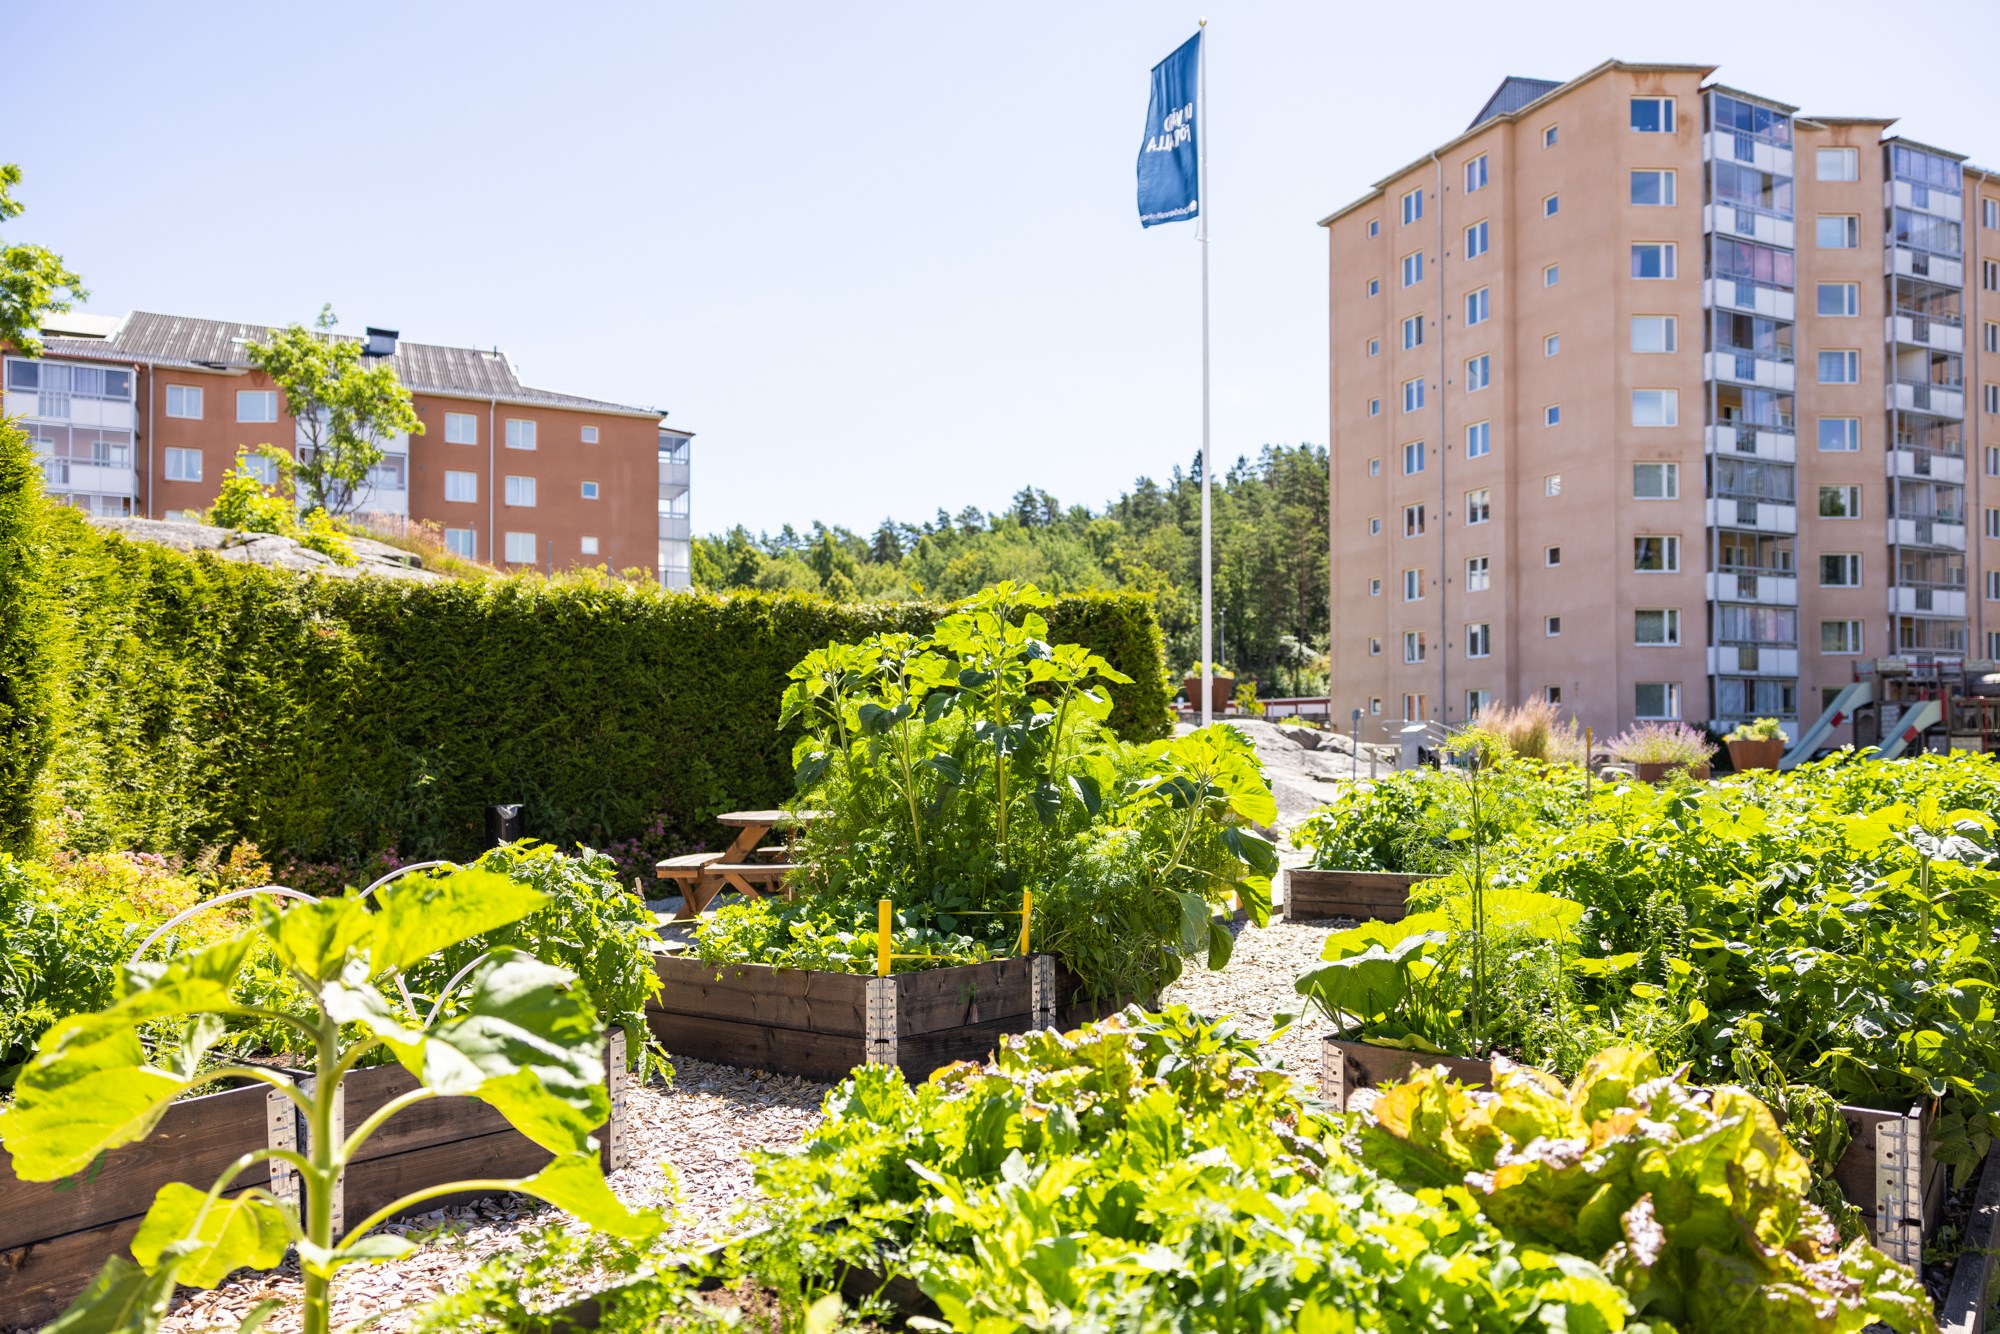 Bild på fastigheten adress Hagarnevägen 45 med odling i pallkragar i förgrunden.